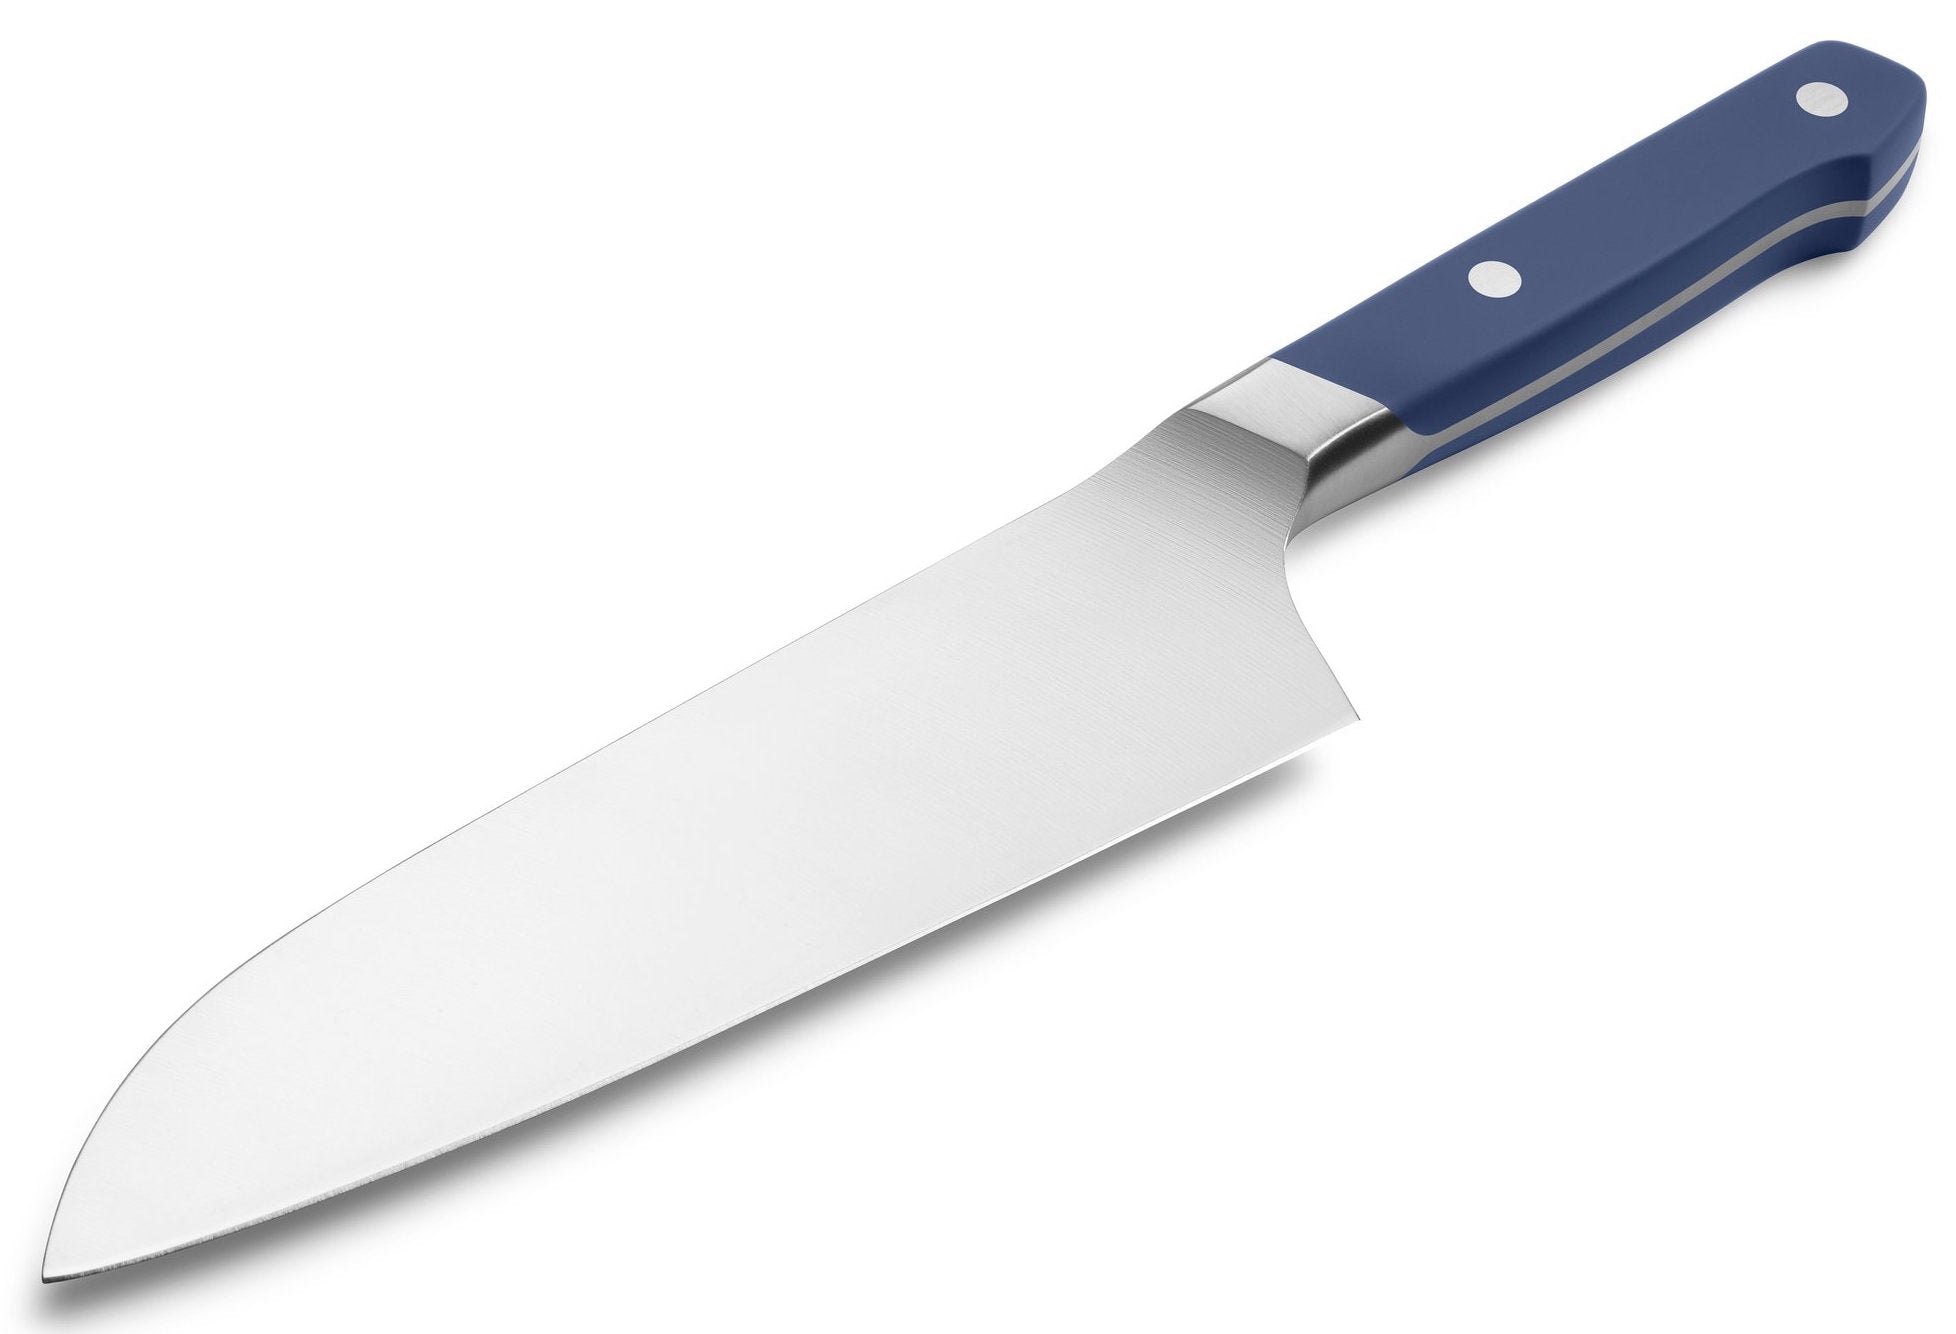 Japanese kitchen knives: a santoku